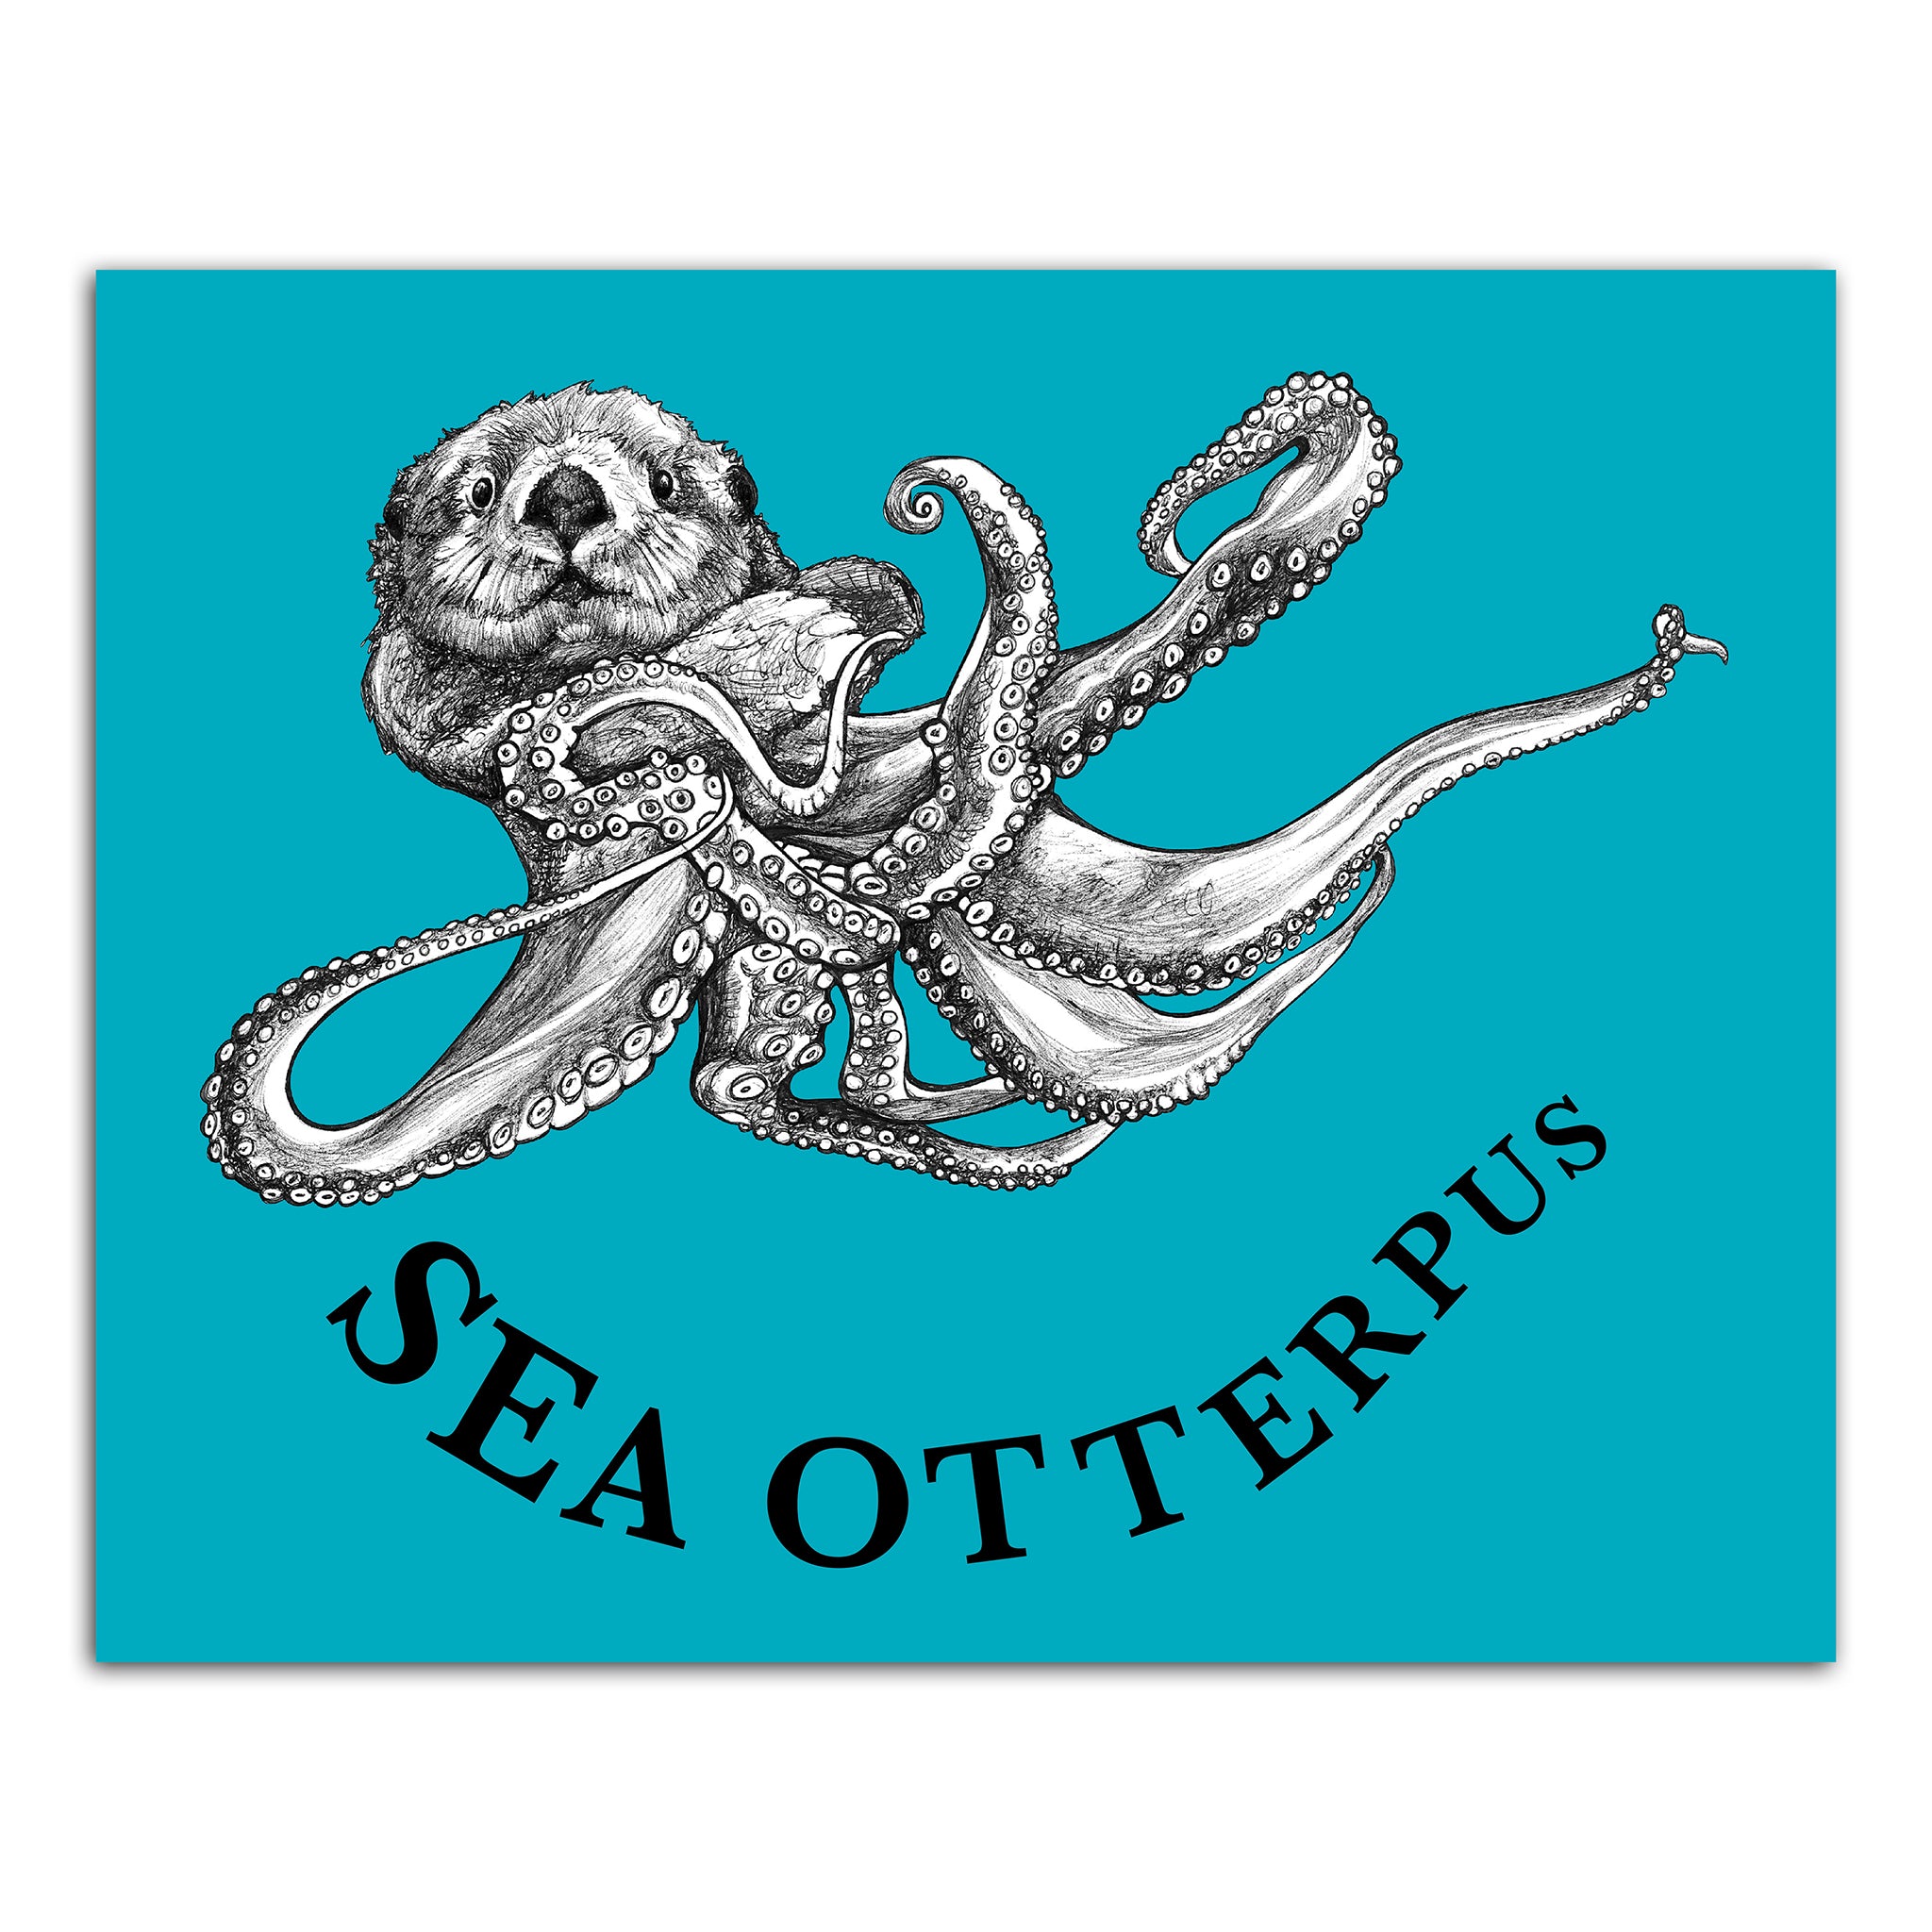 Sea Otterpus | Sea Otter + Octopus Hybrid Animal | 8x10" Color Print